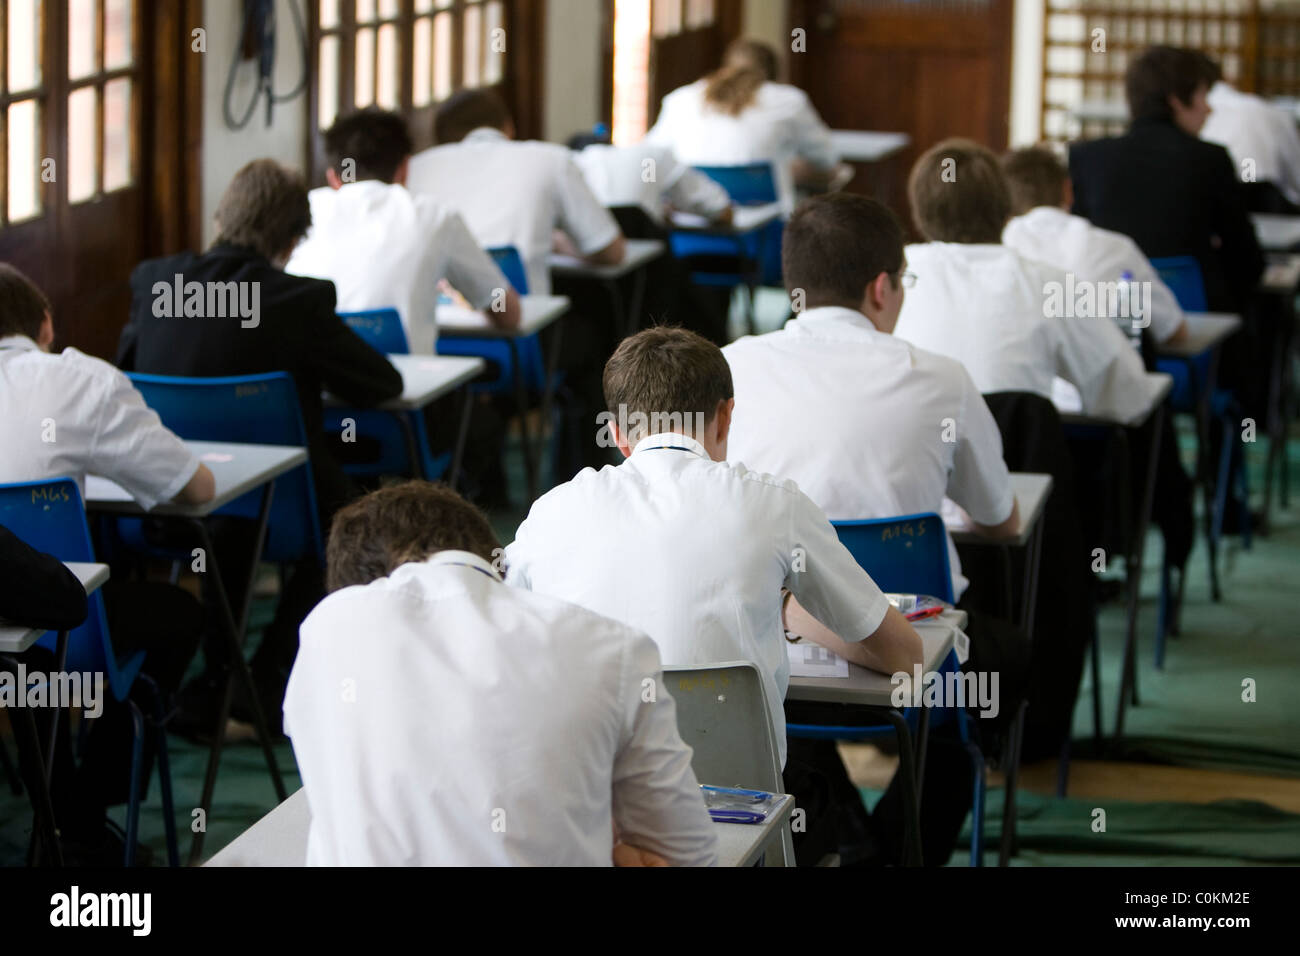 Les élèves remplissent une salle d'examen à prendre un examen GCSE à Maidstone Grammar school à Maidstone, Kent, Royaume-Uni Banque D'Images